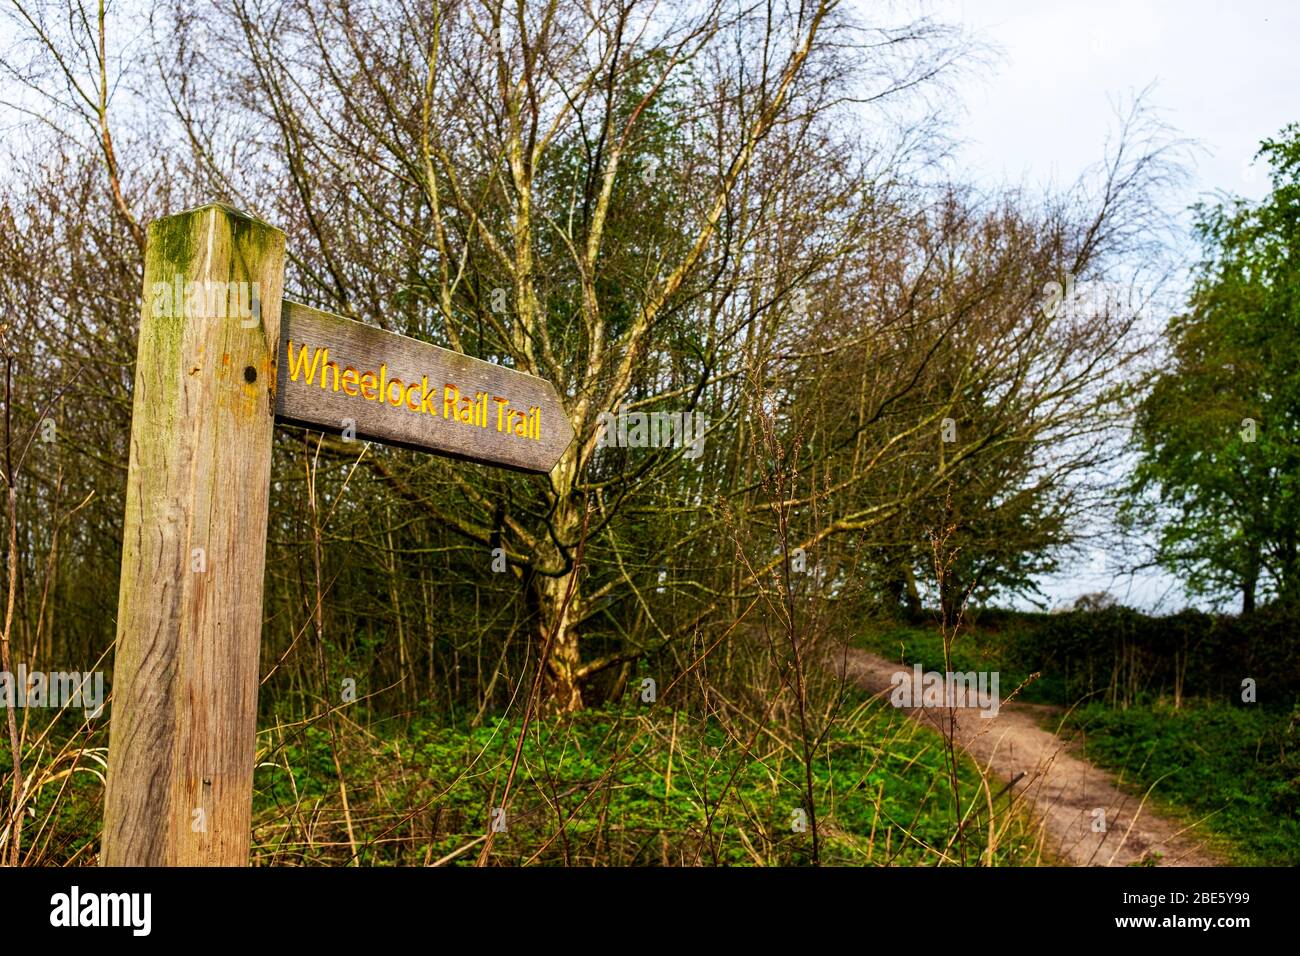 Wheelock rail trail sign Cheshire UK Stock Photo